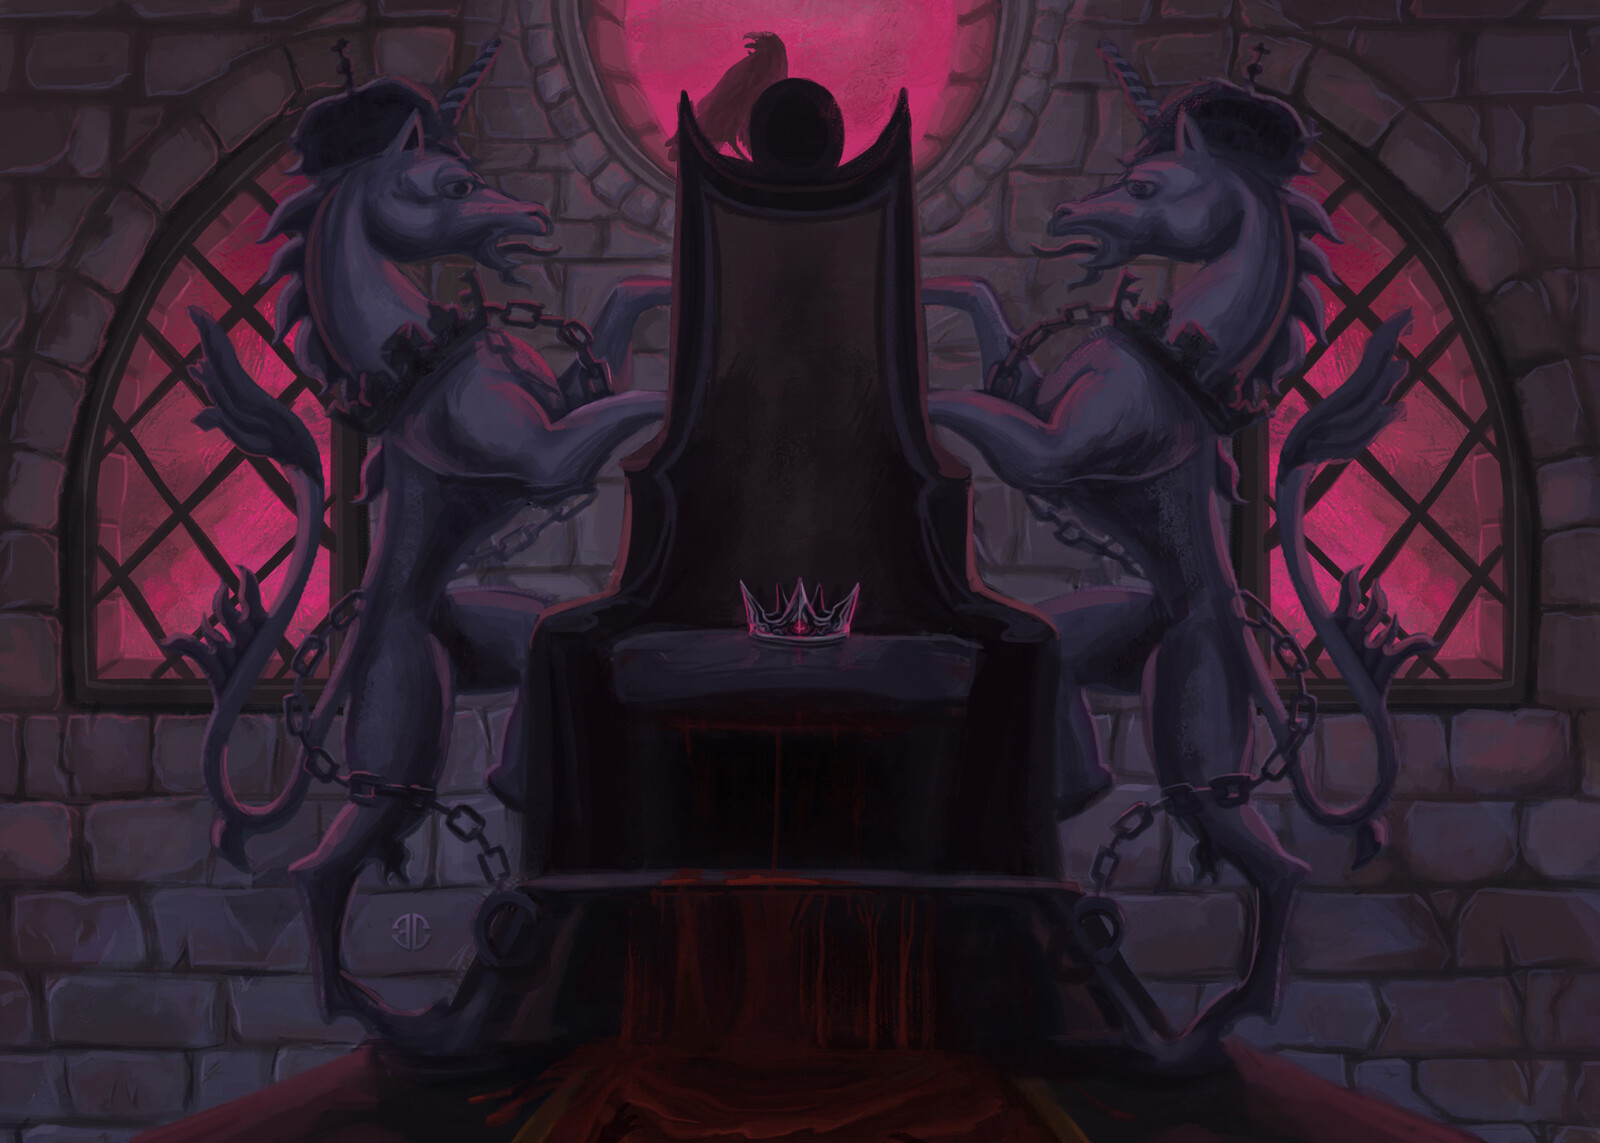 The Throne (clean closeup version)